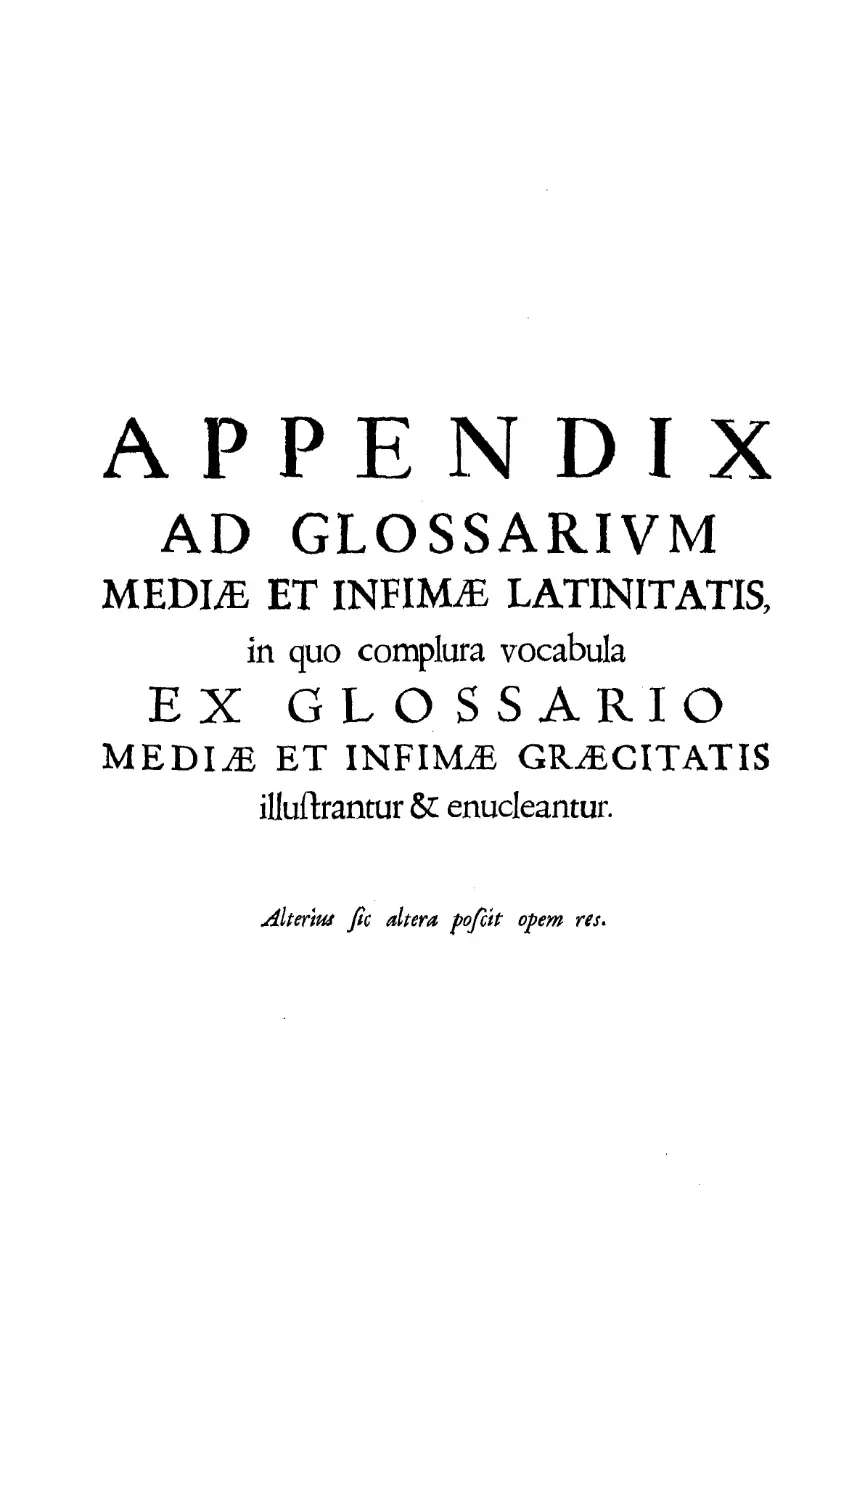 Appendix ad glossarium mediae Latinitatis
Appendix ad glossarium mediae Latinitatis